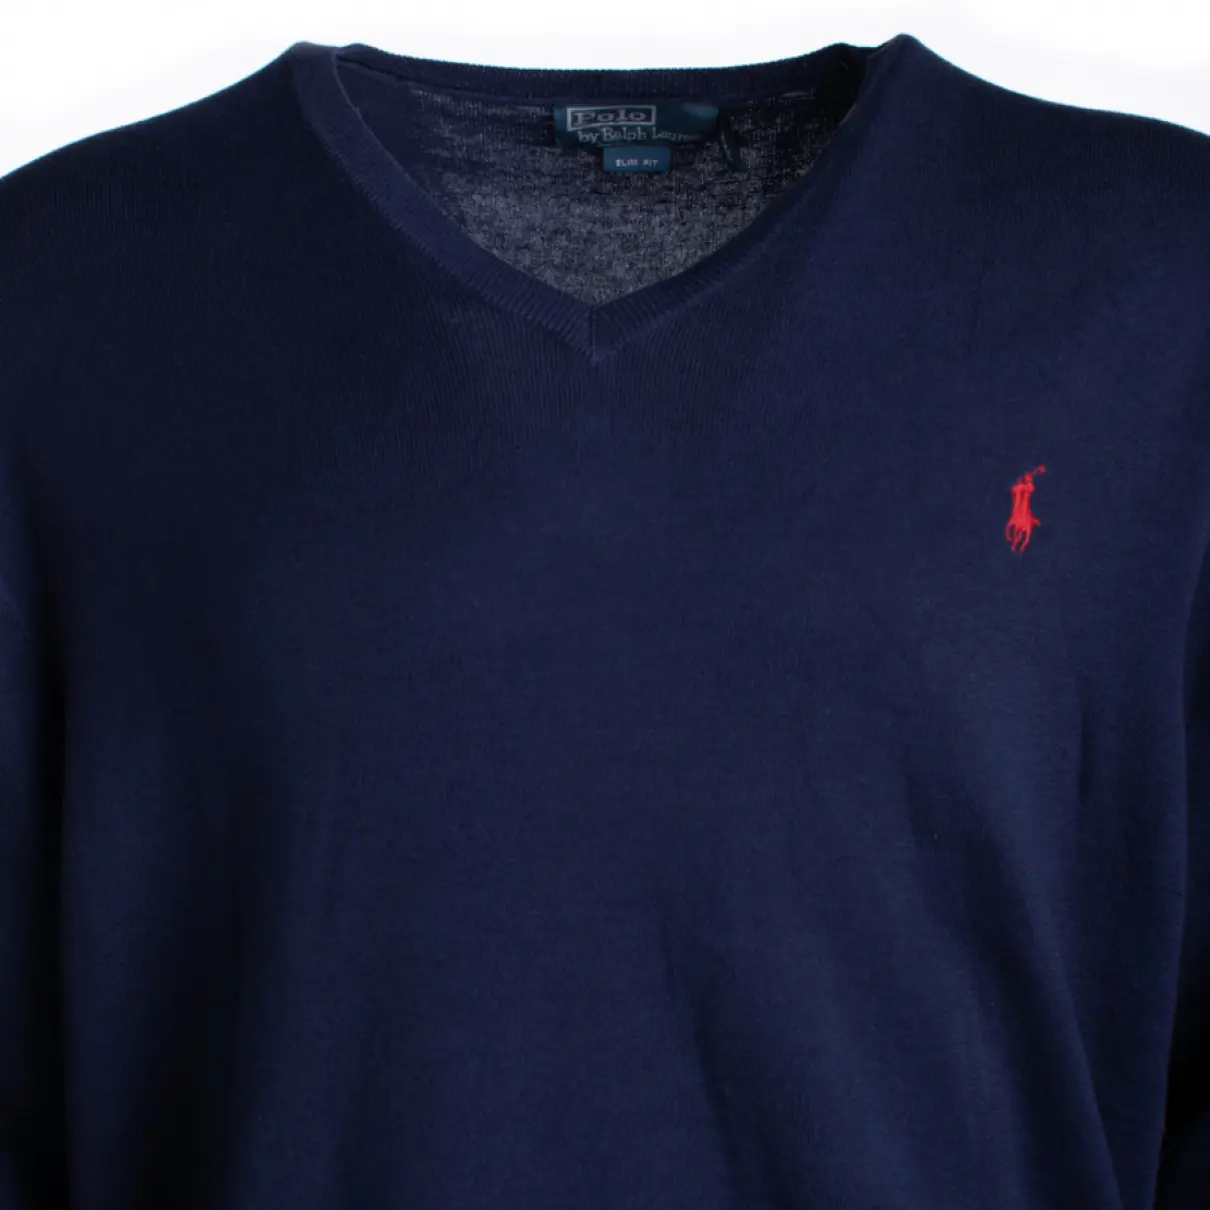 Buy Polo Ralph Lauren Knitwear & sweatshirt online